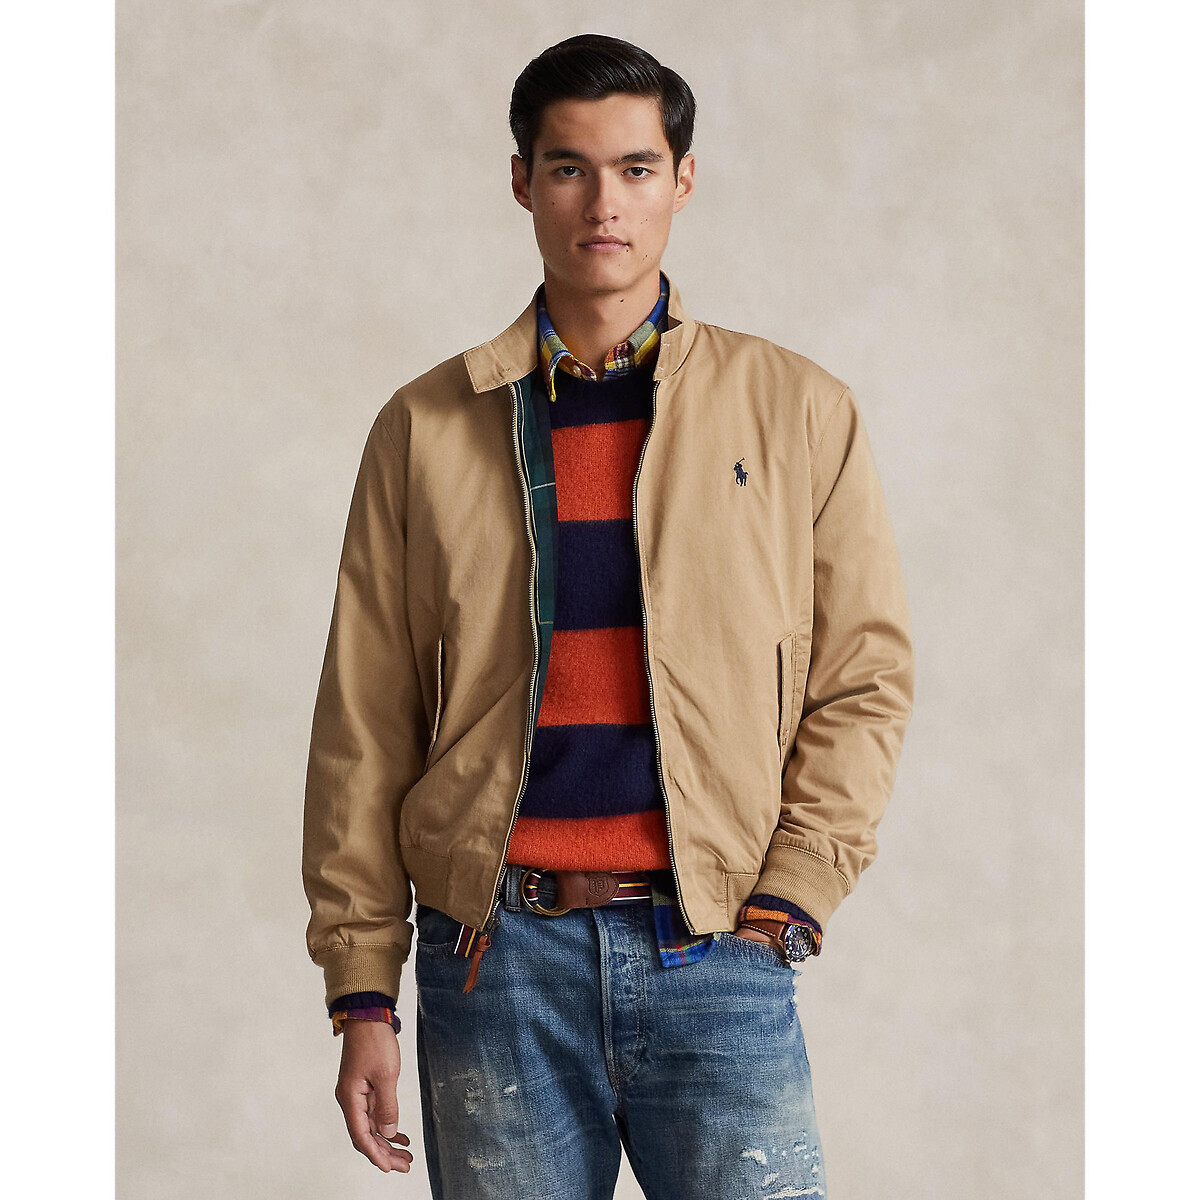 Cotton zip-up jacket, coffee, Polo Ralph Lauren | La Redoute